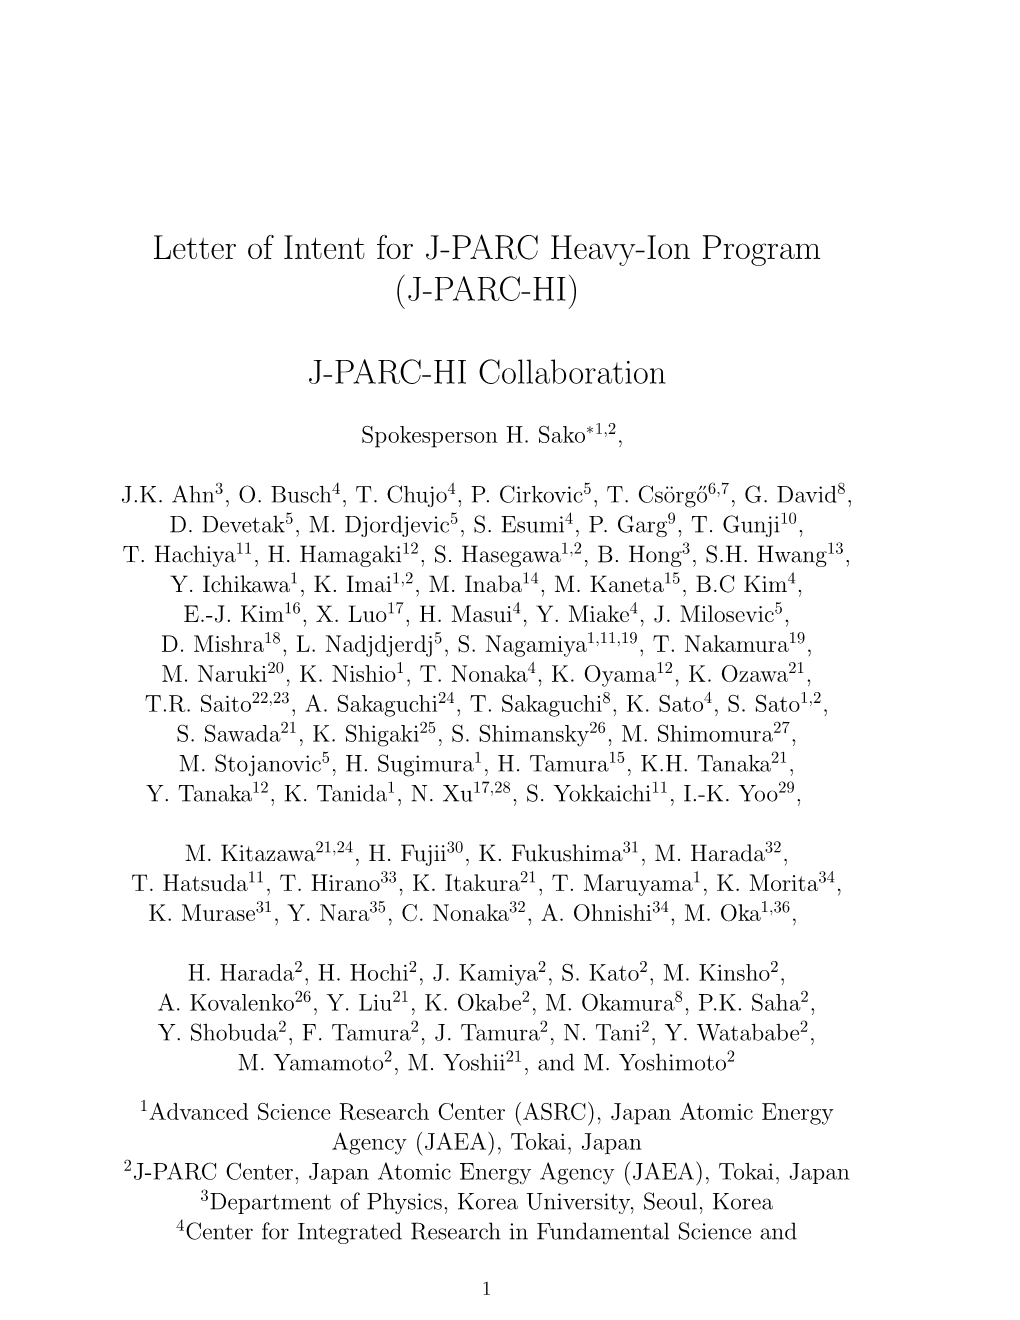 Letter of Intent for J-PARC Heavy-Ion Program (J-PARC-HI)